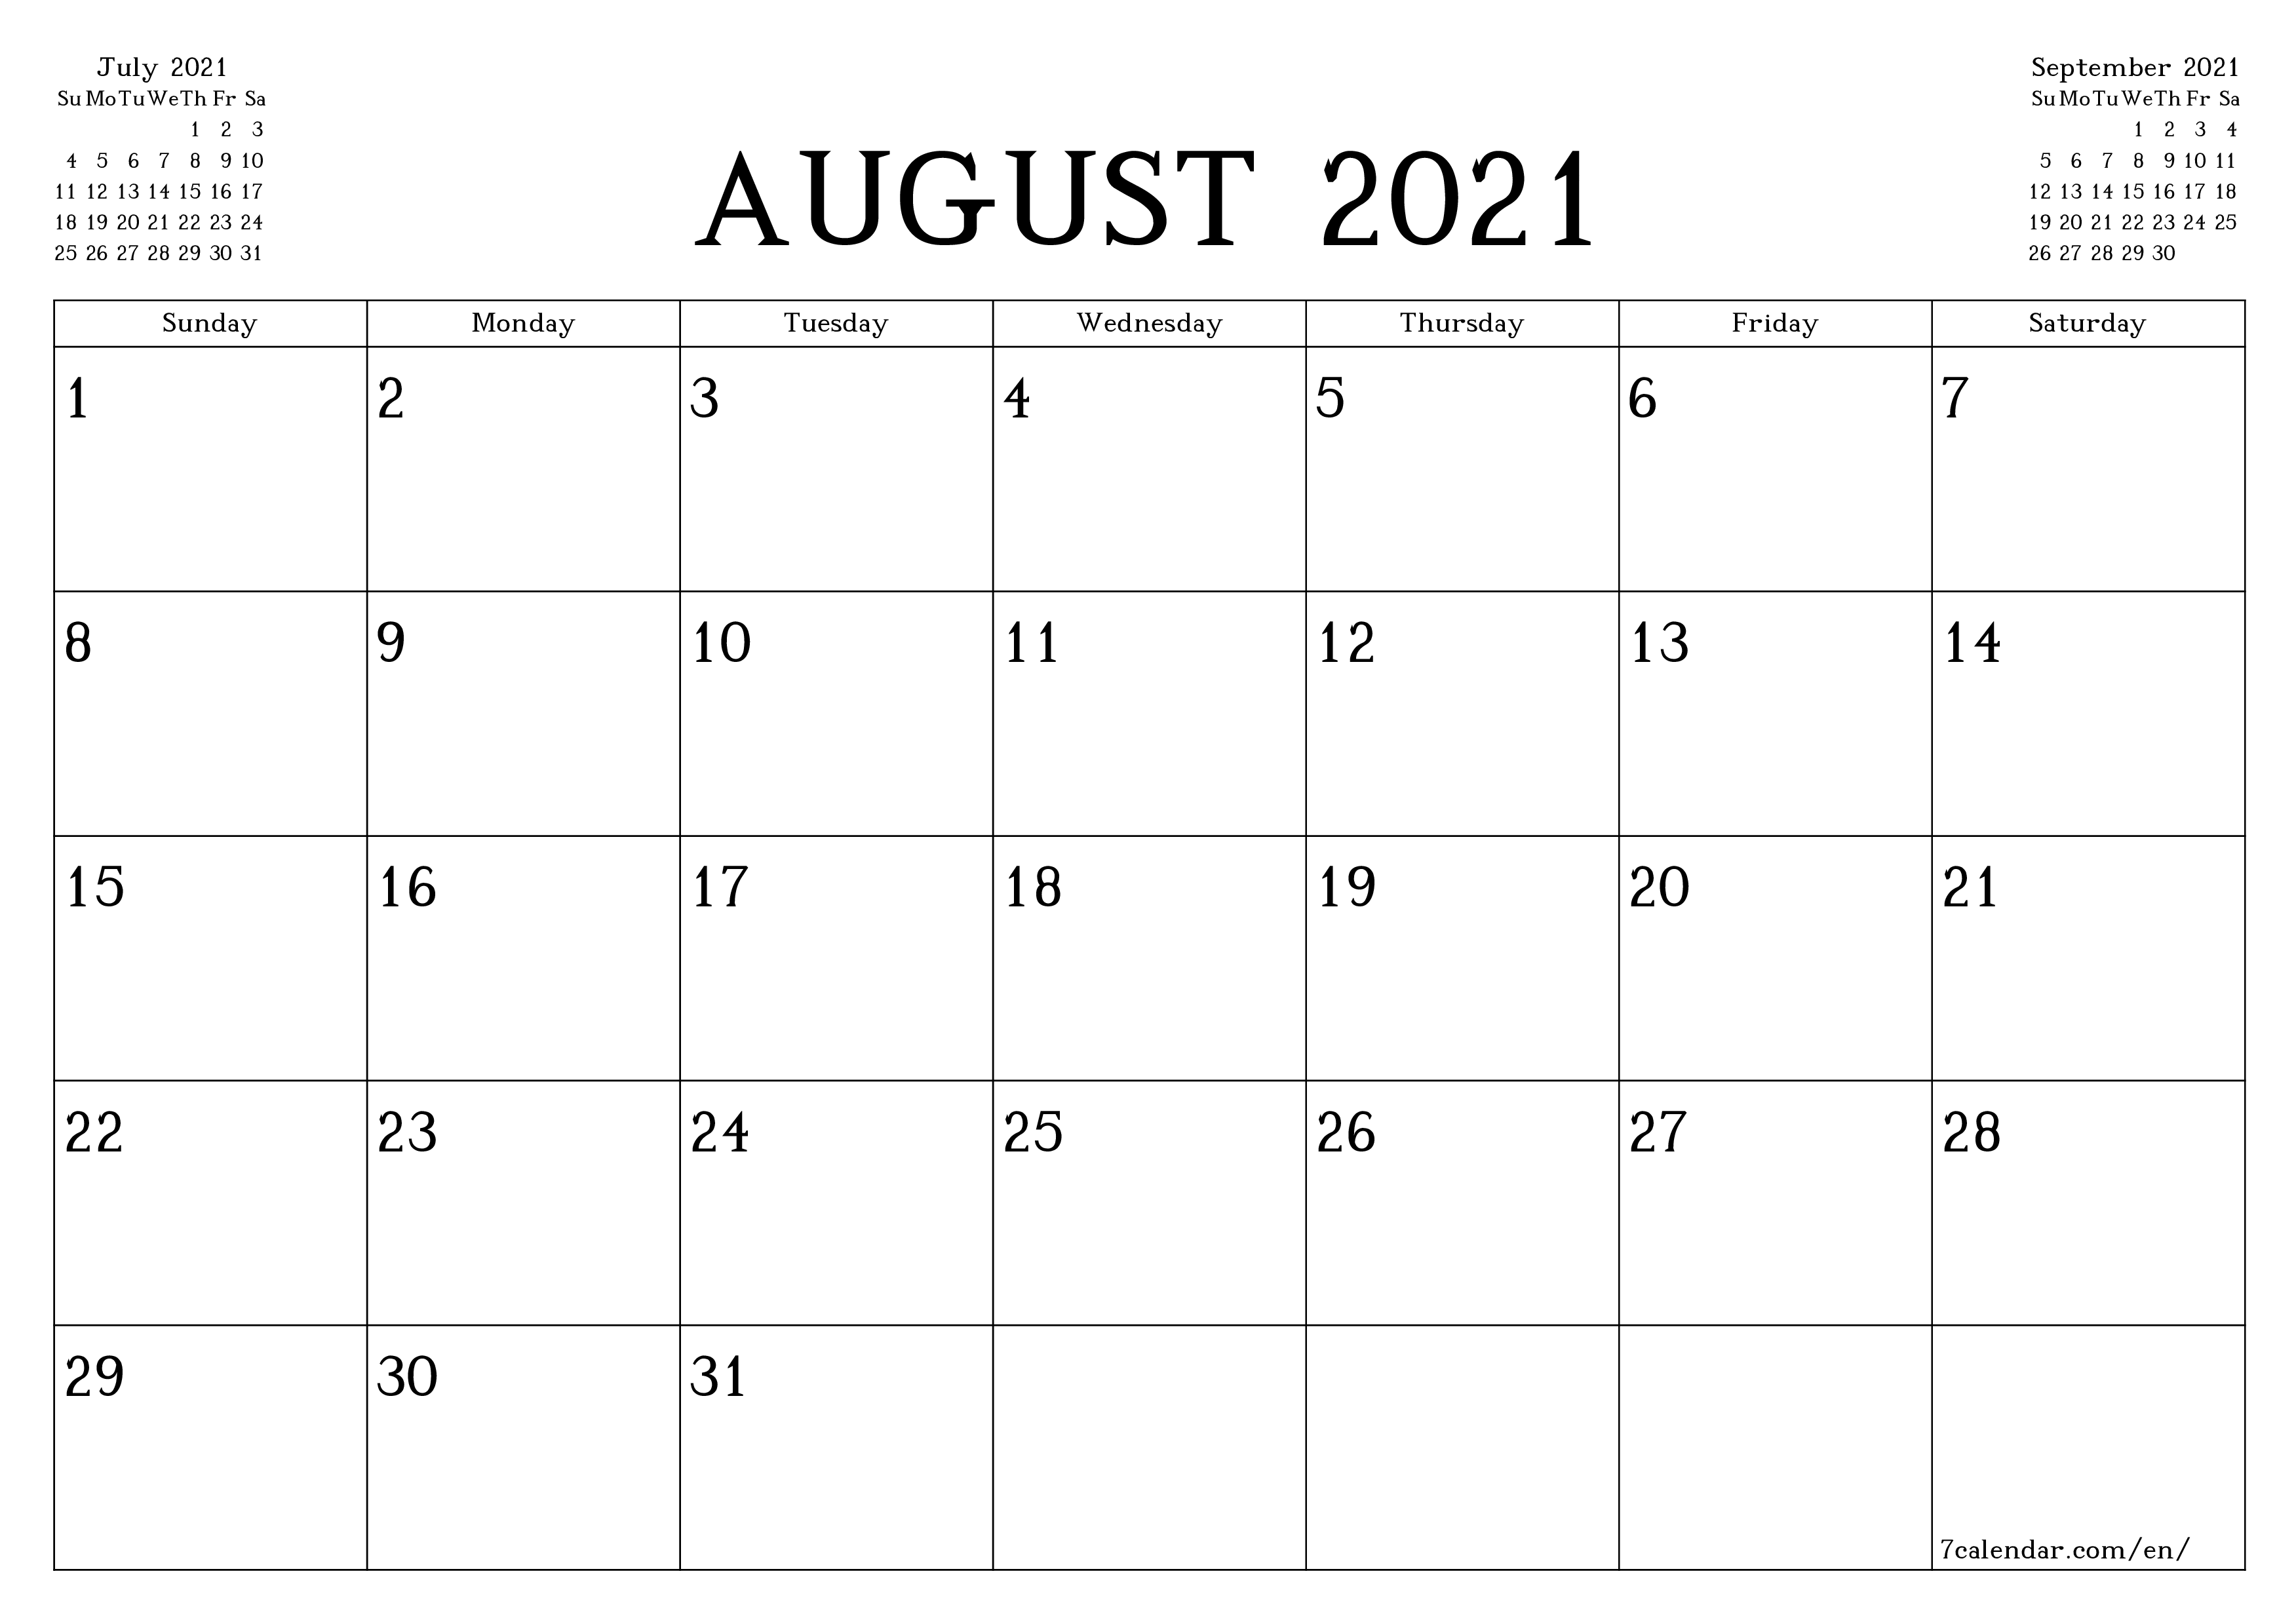 Kalender ogos 2021